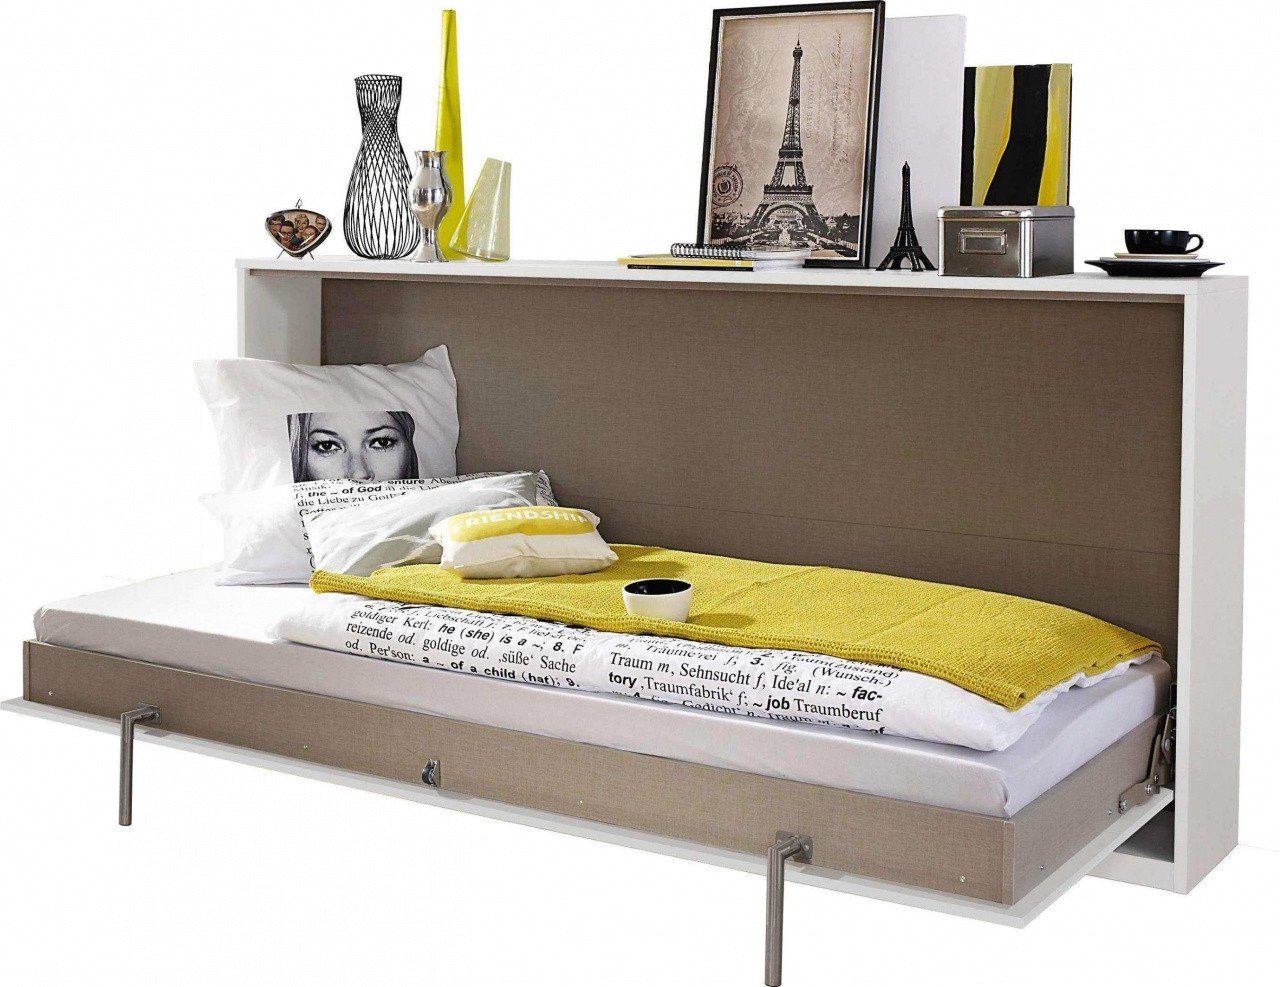 Cheap White Bedroom Furniture Set New Samuel Lawrence Bedroom Furniture – the New Daily Nation